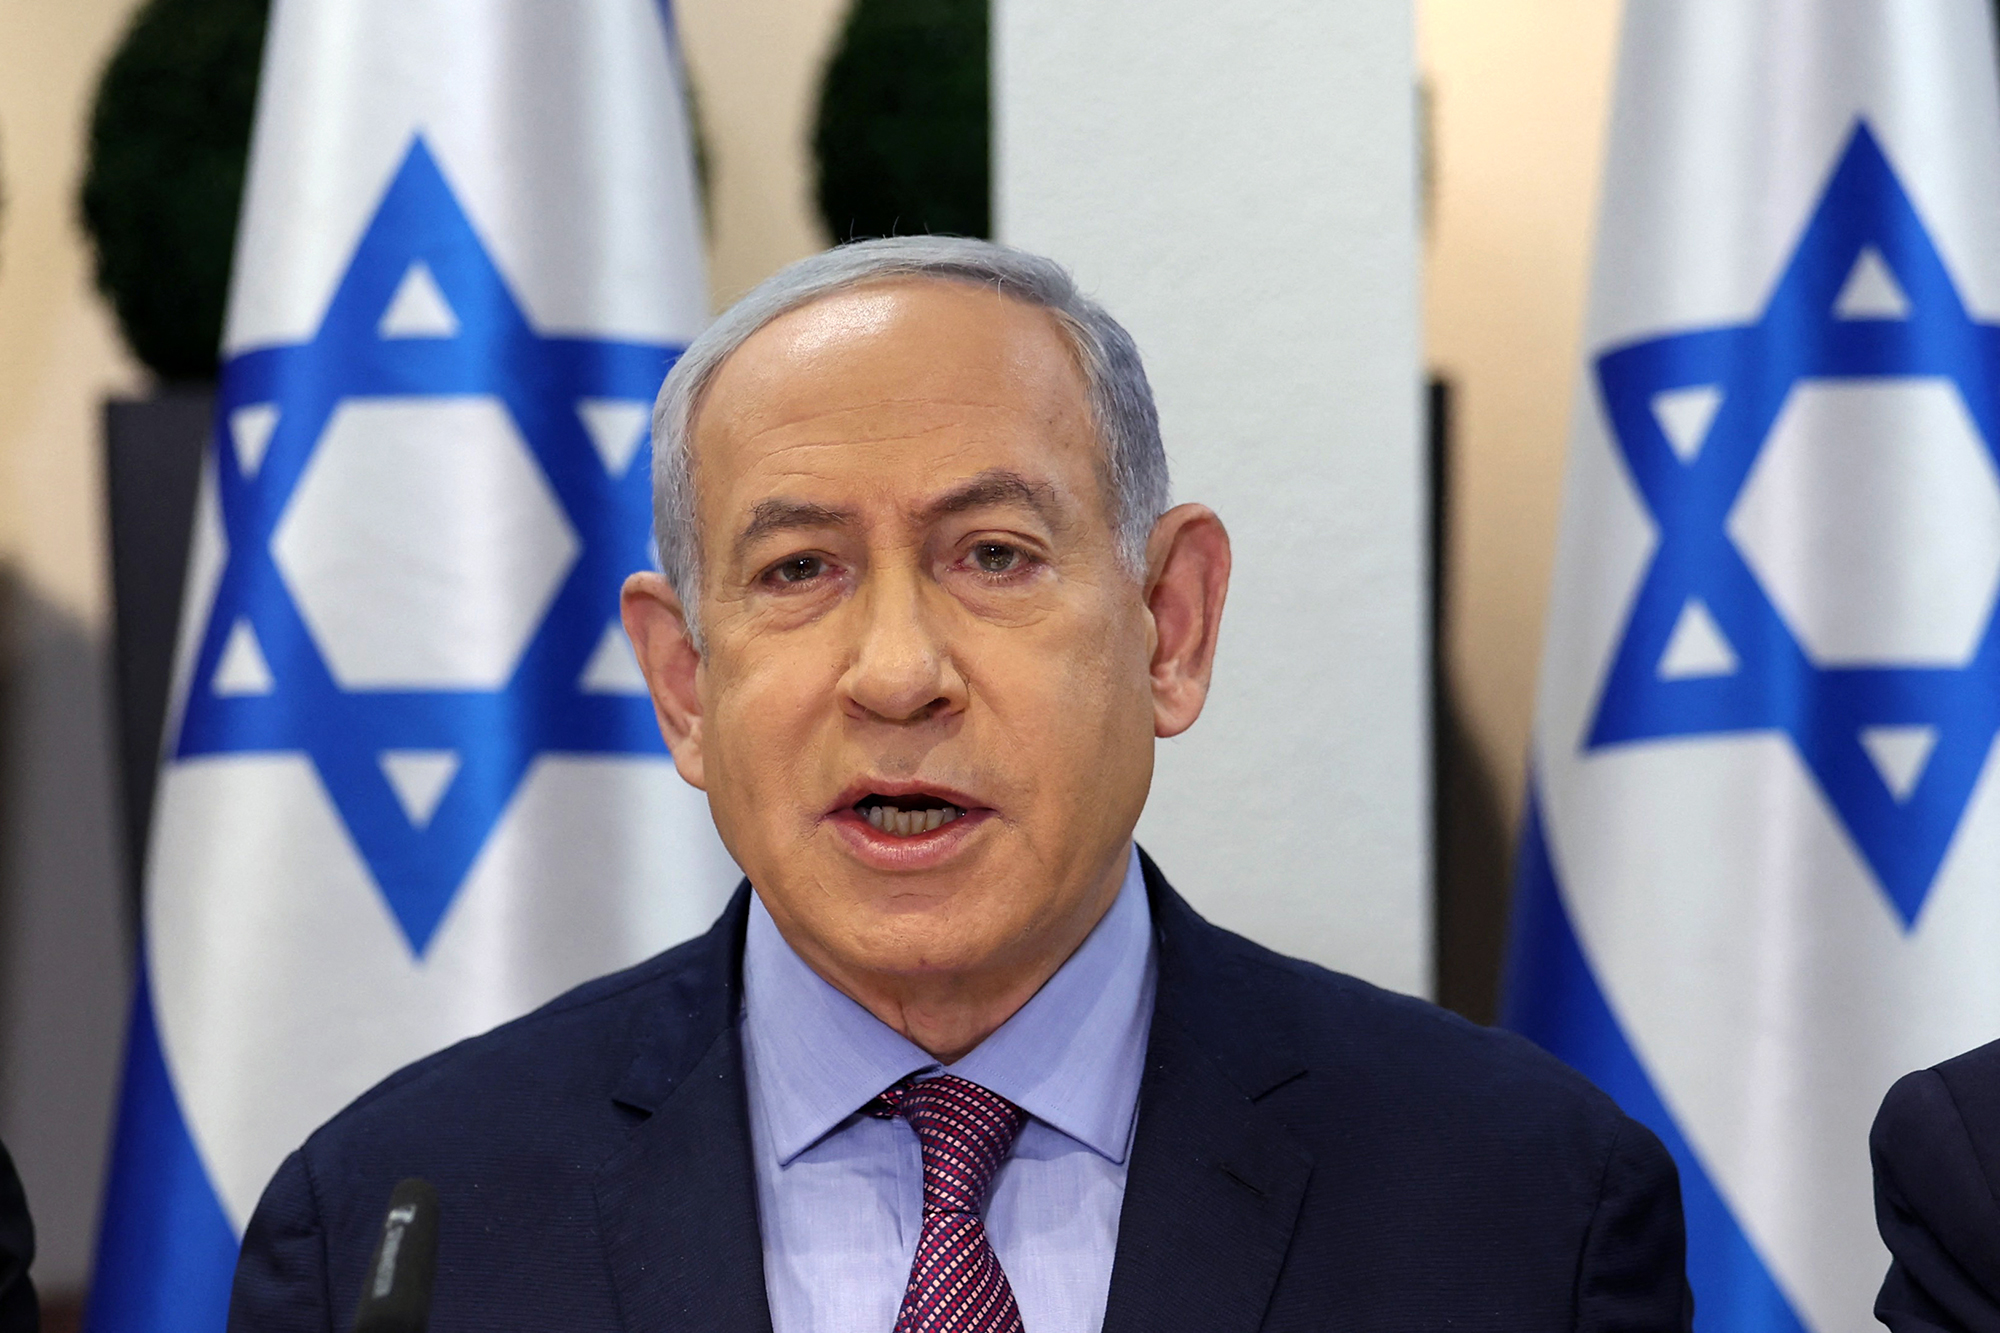 Israeli Prime Minister Benjamin Netanyahu chairs a meeting in Tel Aviv, Israel, on December 31.